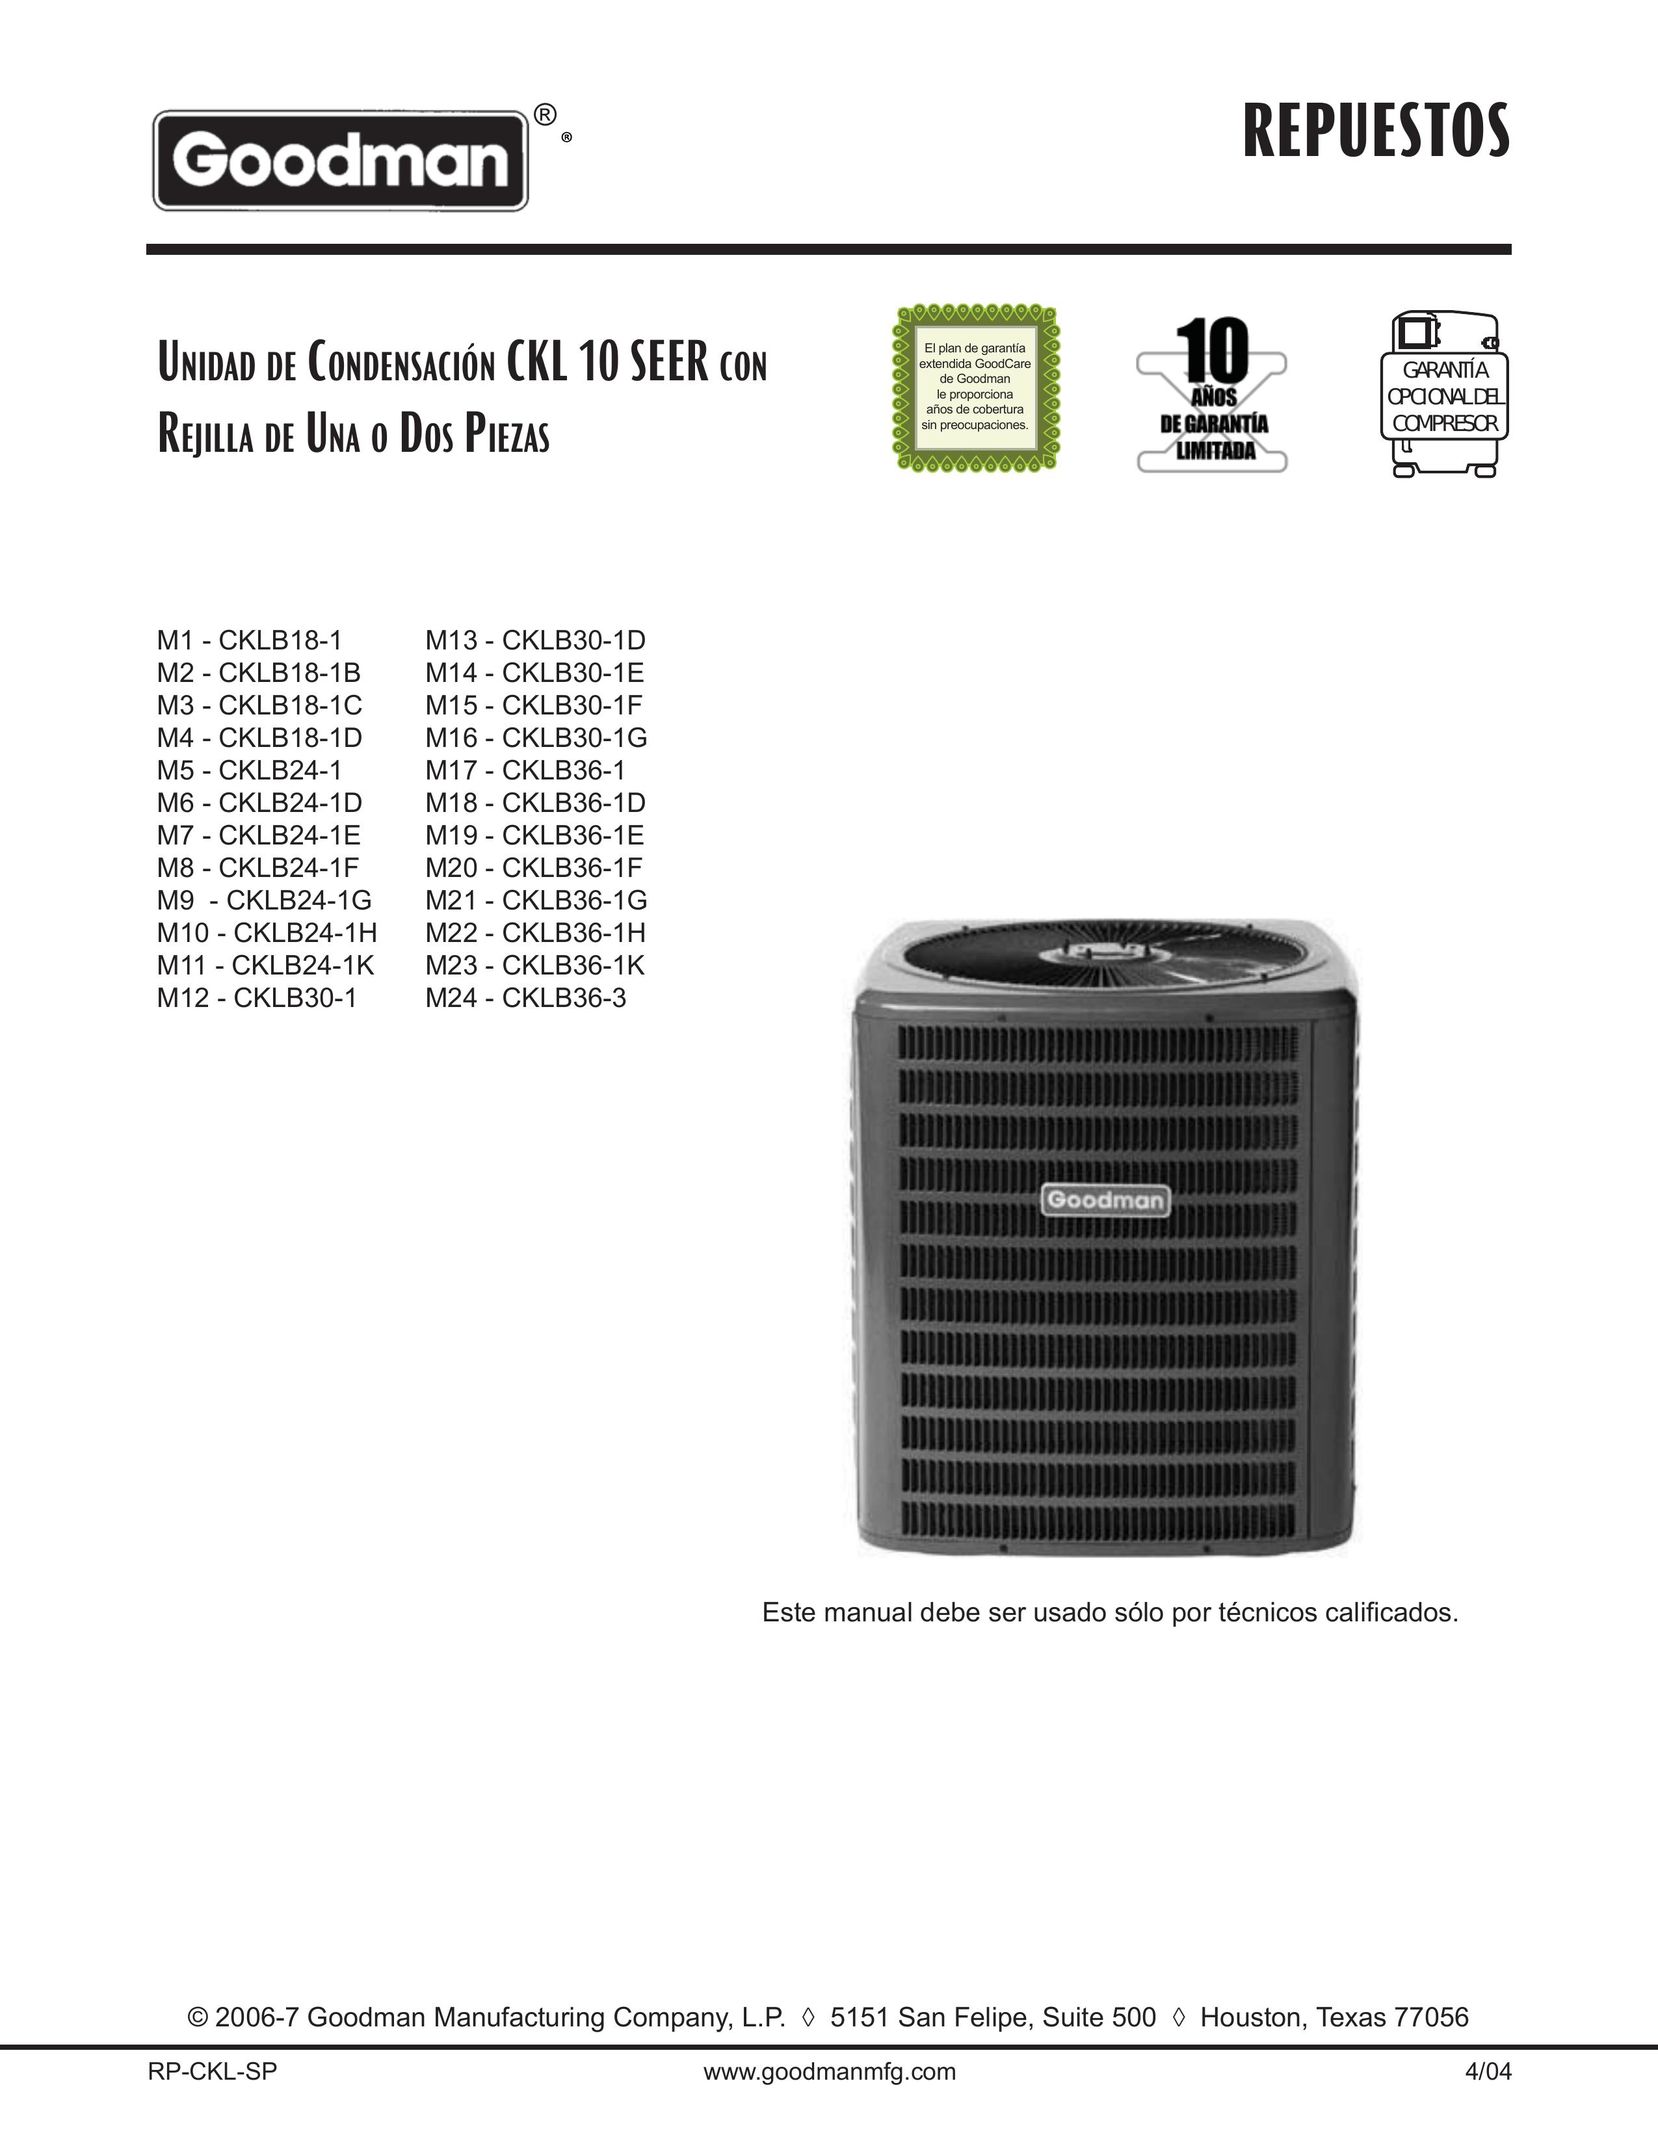 Goodman Mfg CKLB24-1H Air Conditioner User Manual